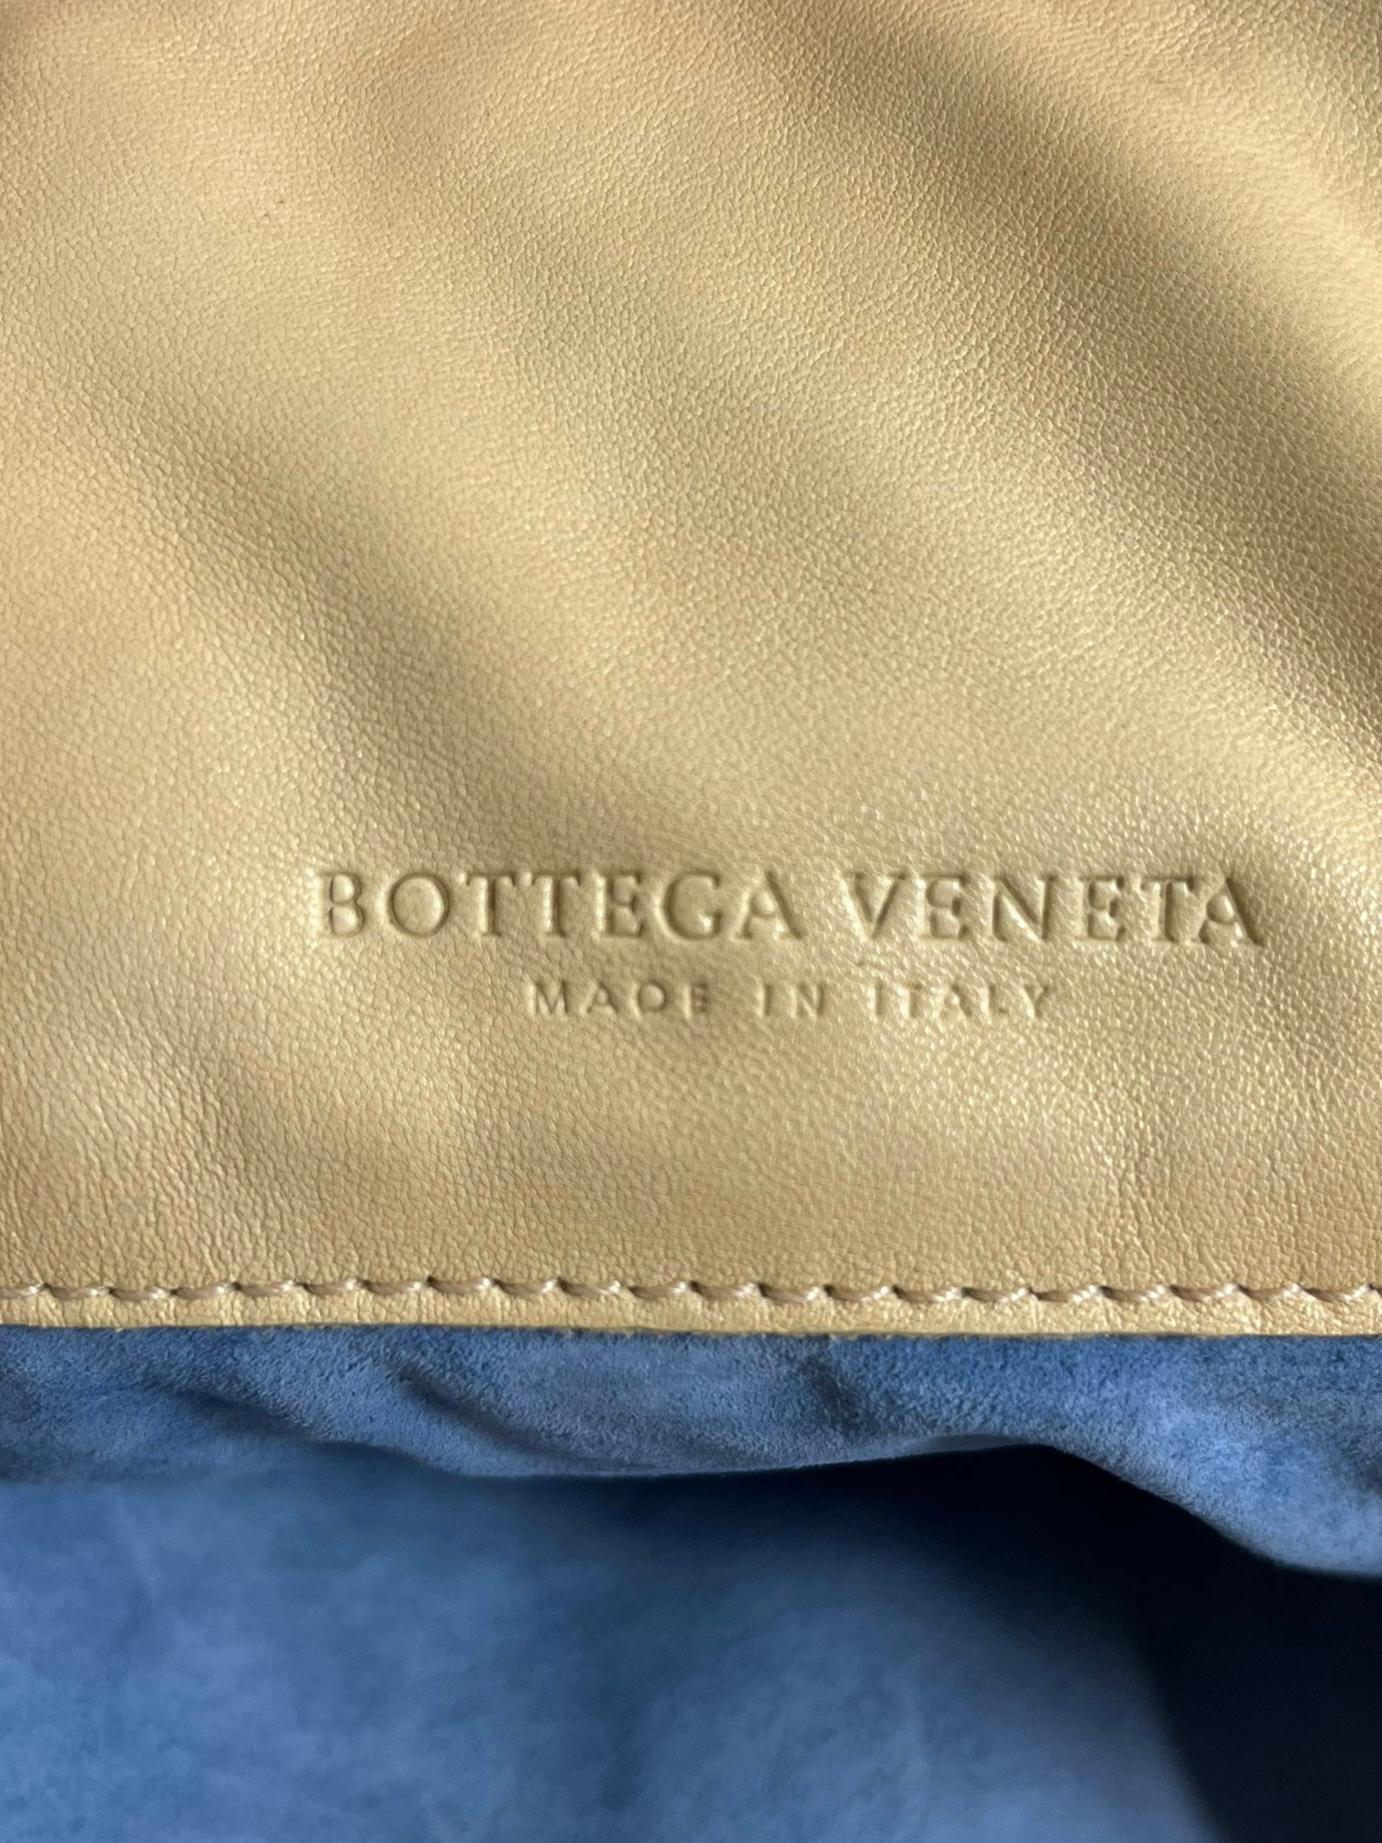 Bottega Veneta Butterfly Embossed Woven Leather Bag For Sale 5